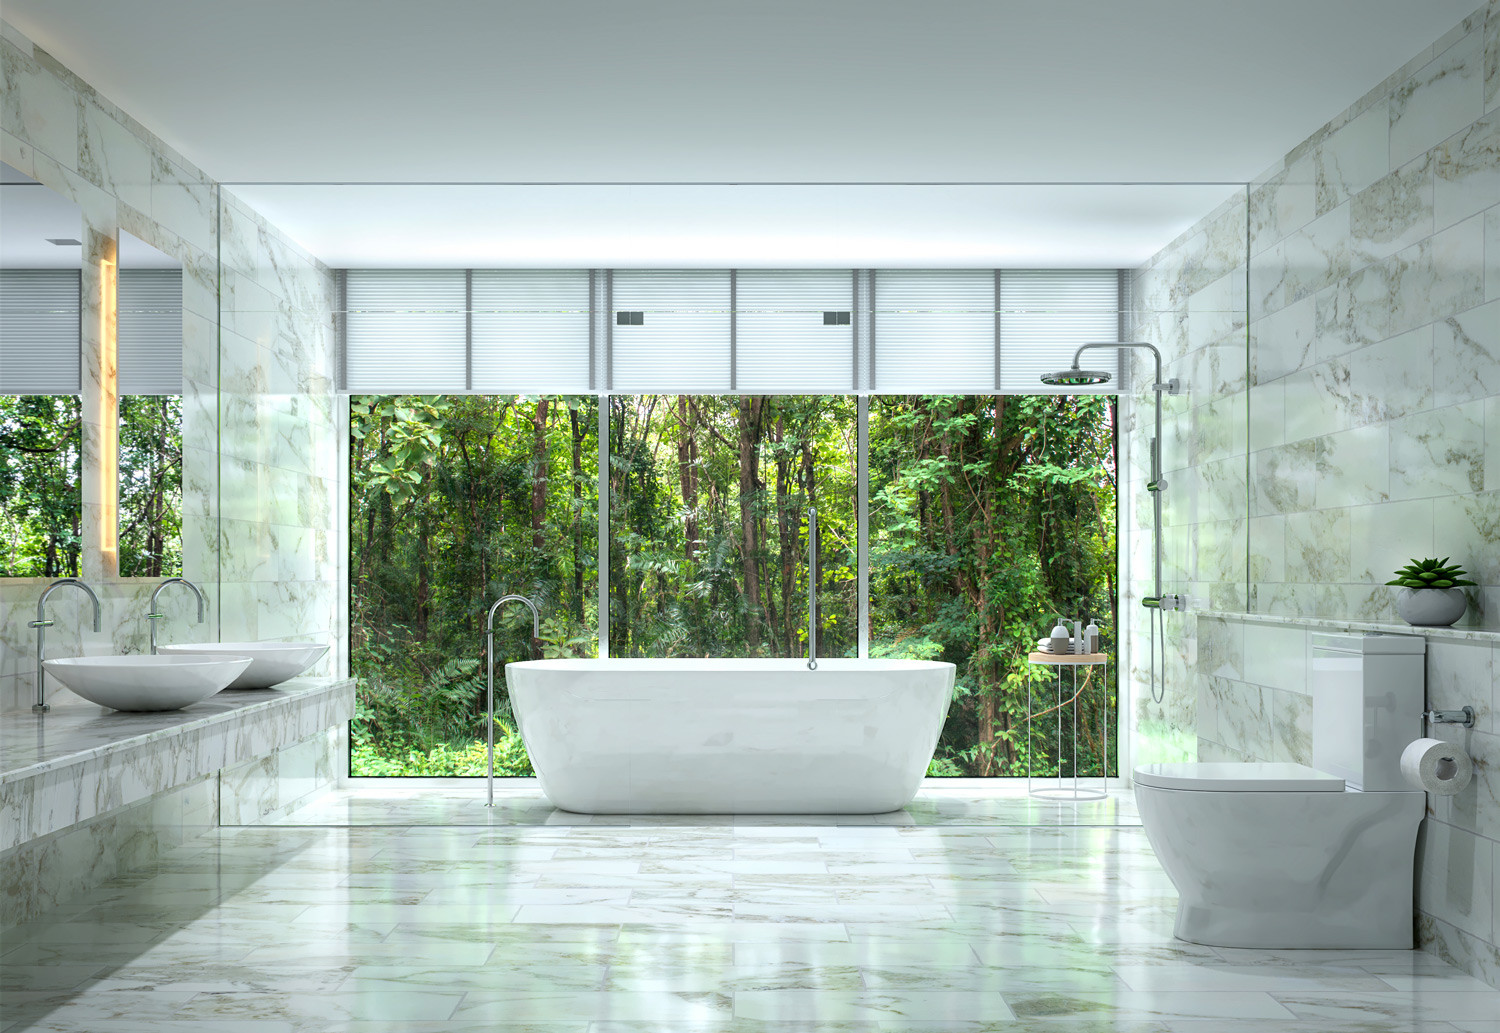 Top 10 Inspiring Bathroom Tile Trends For Westside Tile Stone